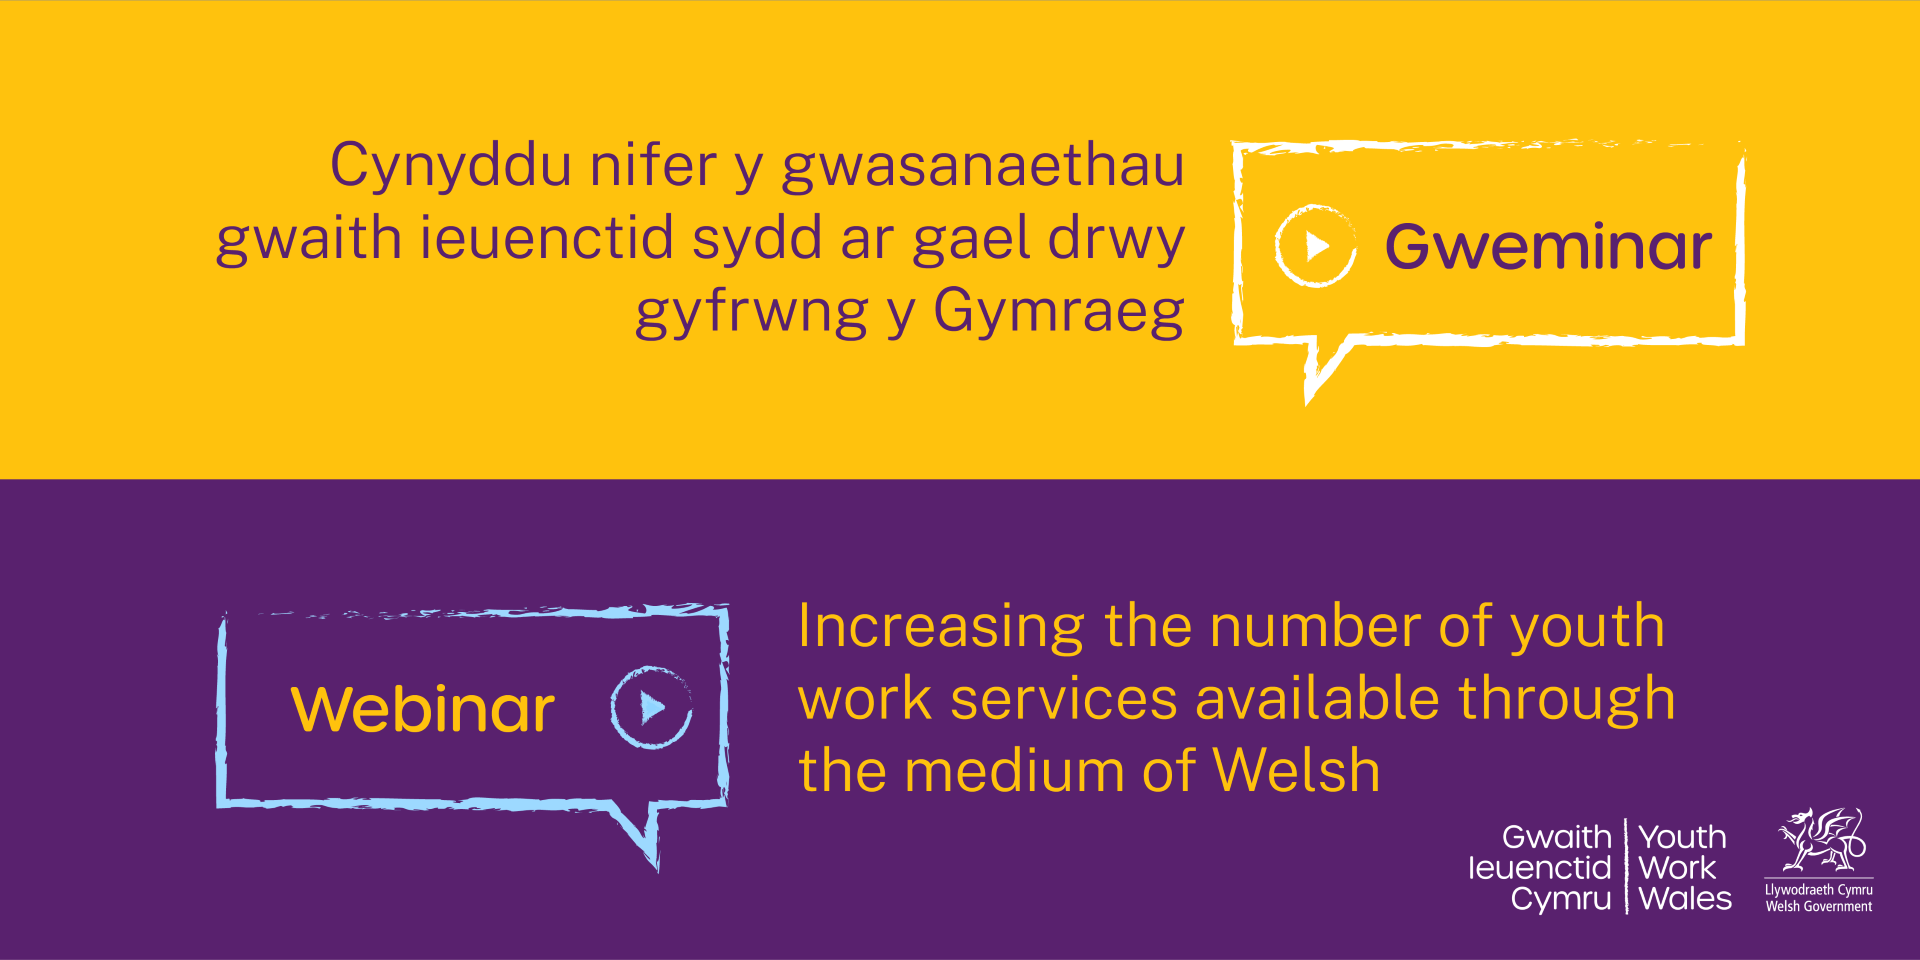 GWEMINAR: Promo Cymru – Cynyddu nifer y gwasanaethau gwaith ieuenctid sydd ar gael drwy gyfrwng y Gymraeg.